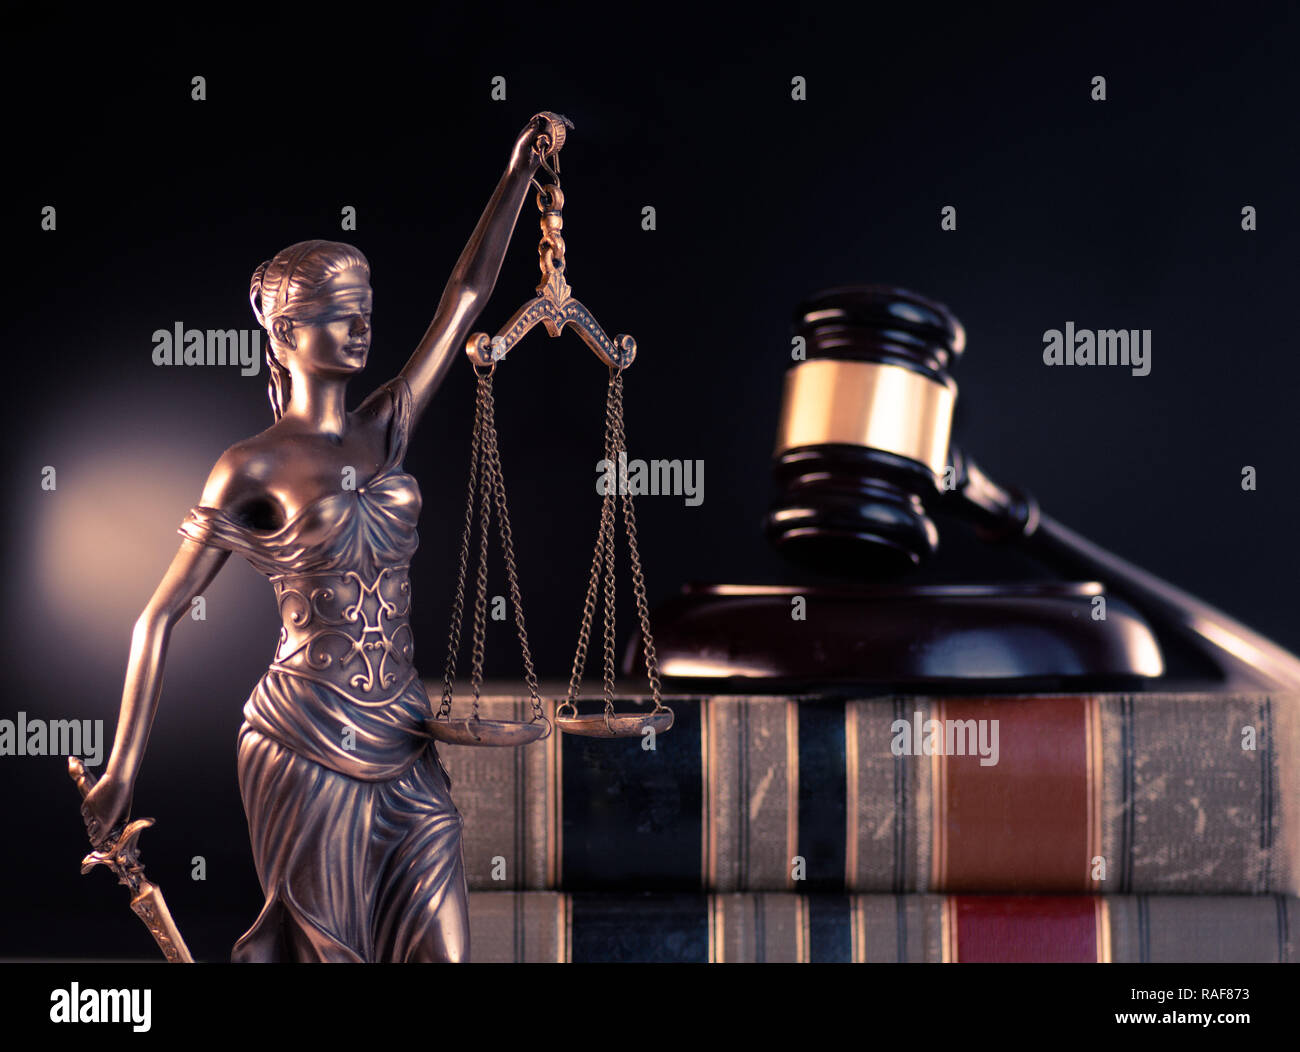 Droit juridique justice sociale concept de droit Banque D'Images